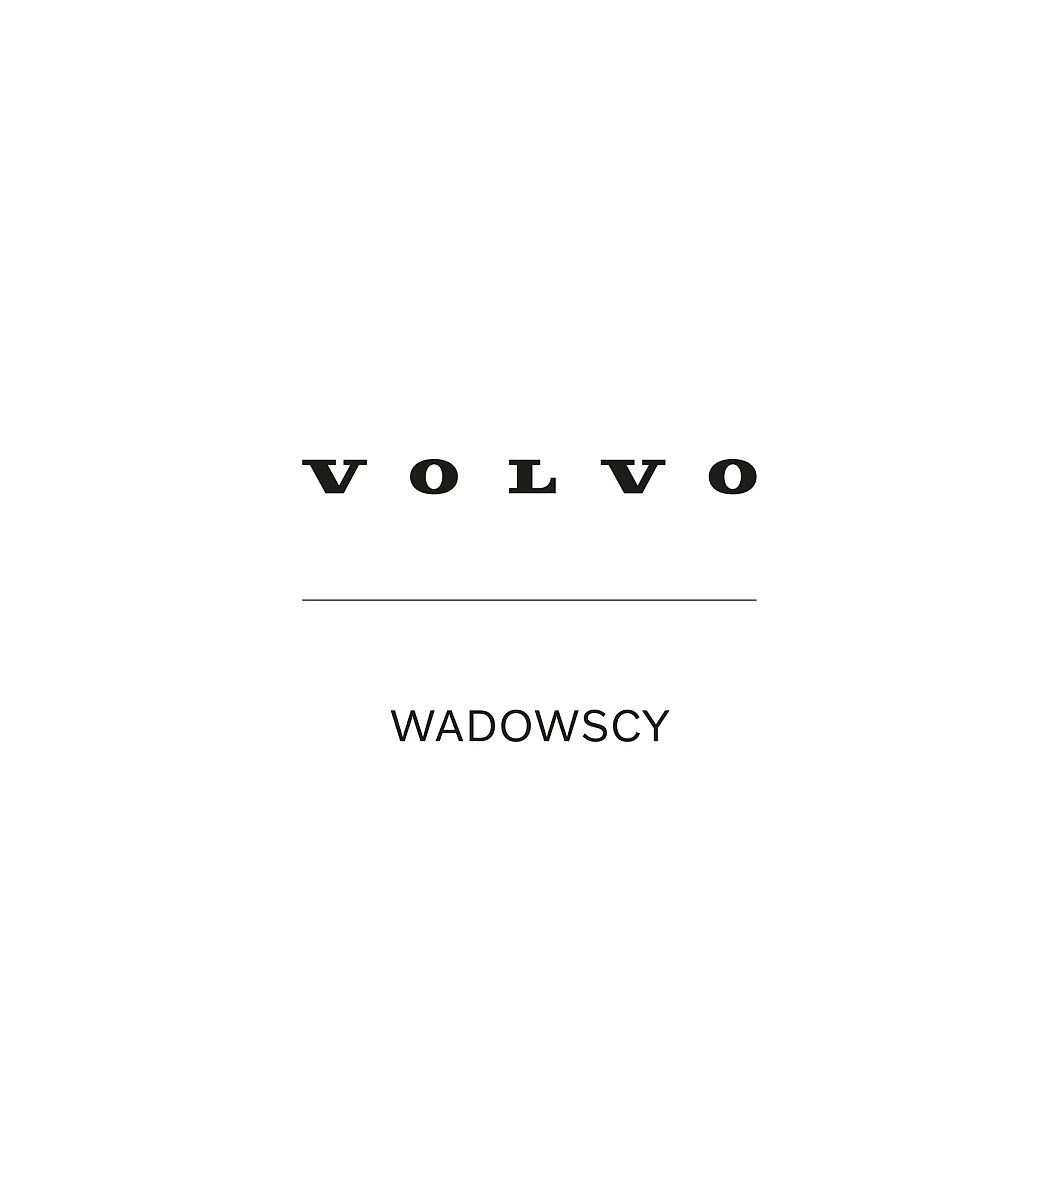 Volvo Wadowscy.jpg  Partnerzy Maxfliz | Wyposażenie wnętrz MAXFLIZ